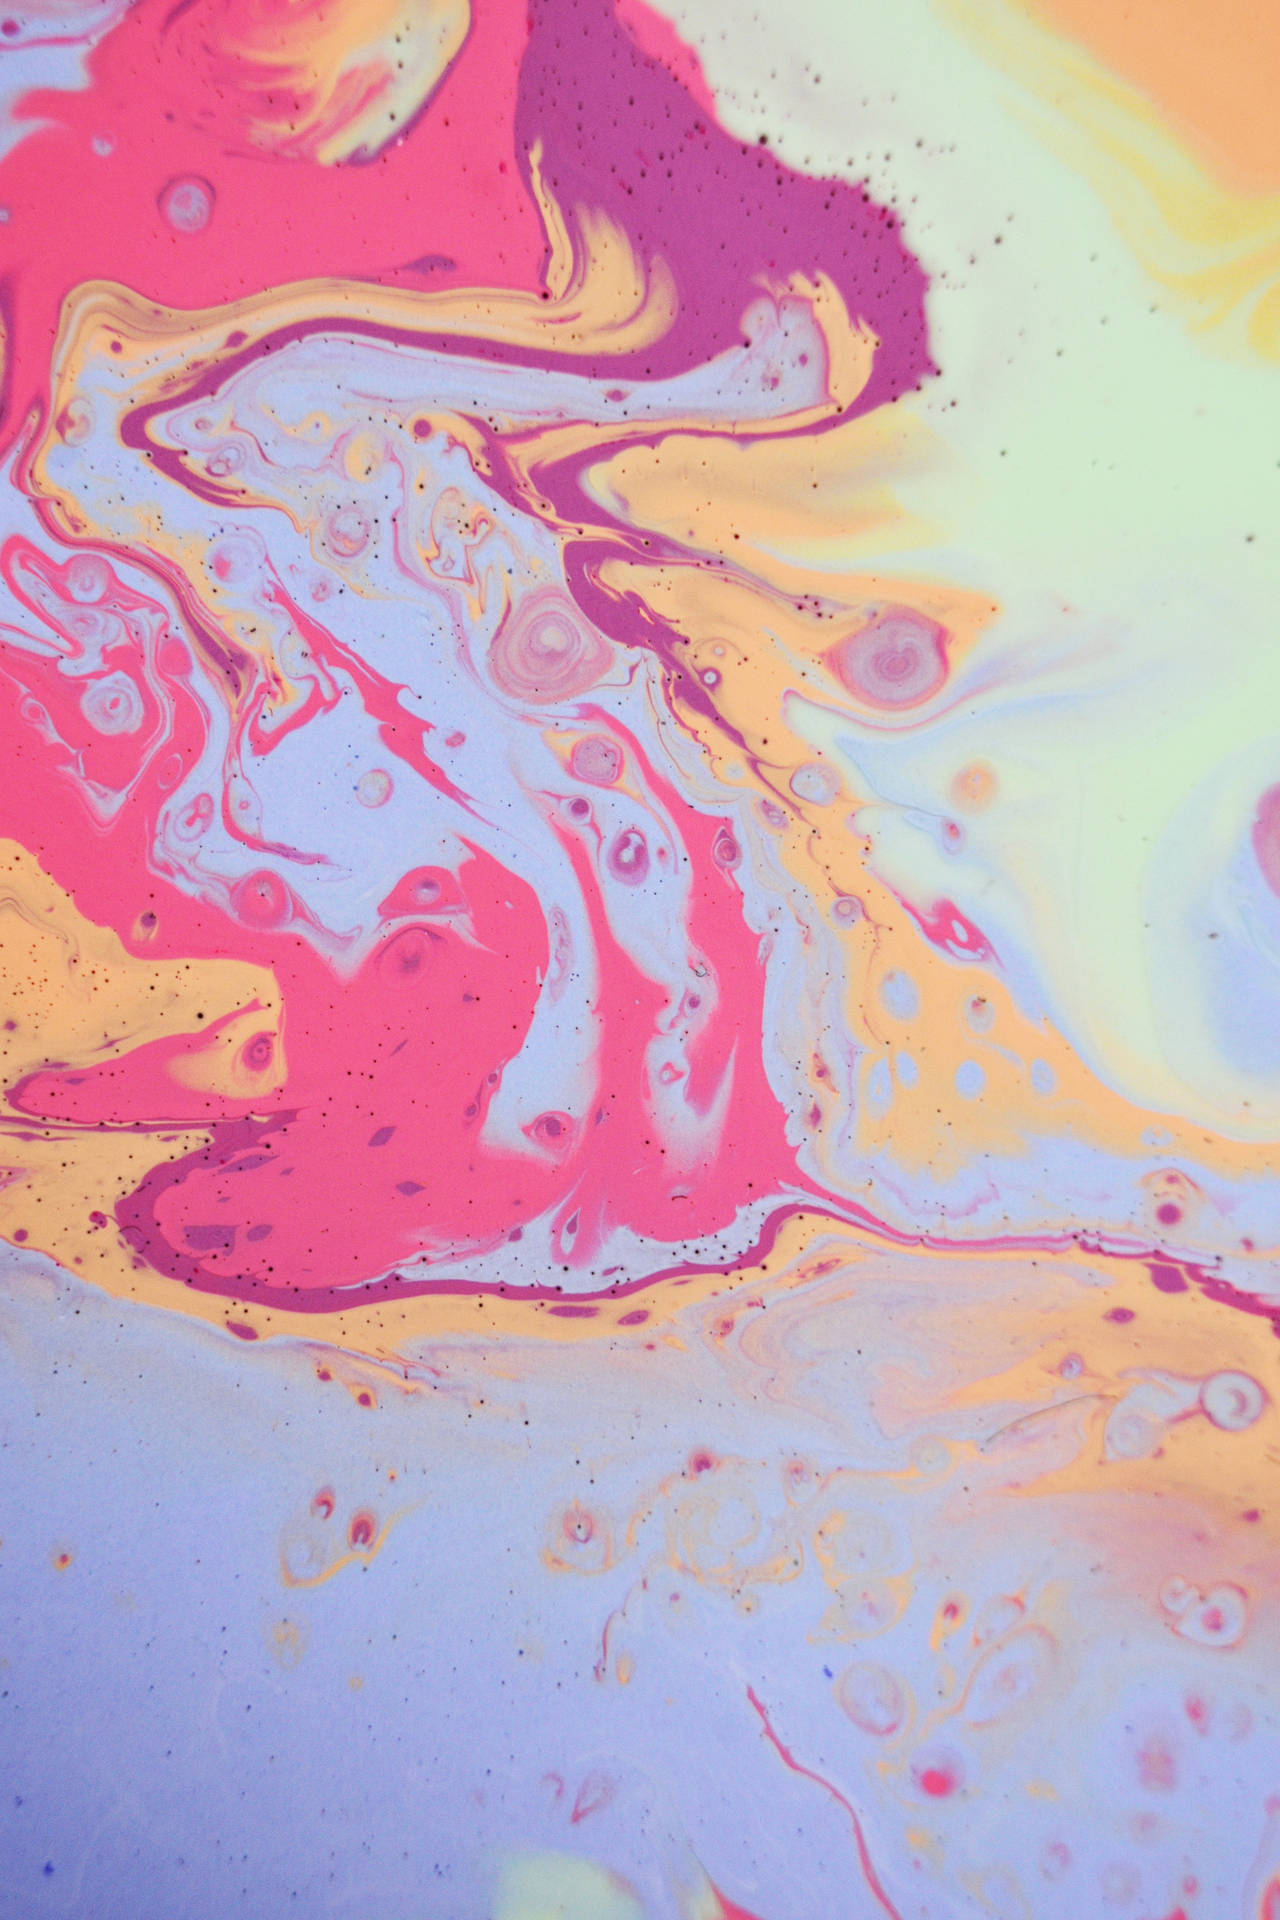 IPhone Lock Screen Swirling Colors Wallpaper